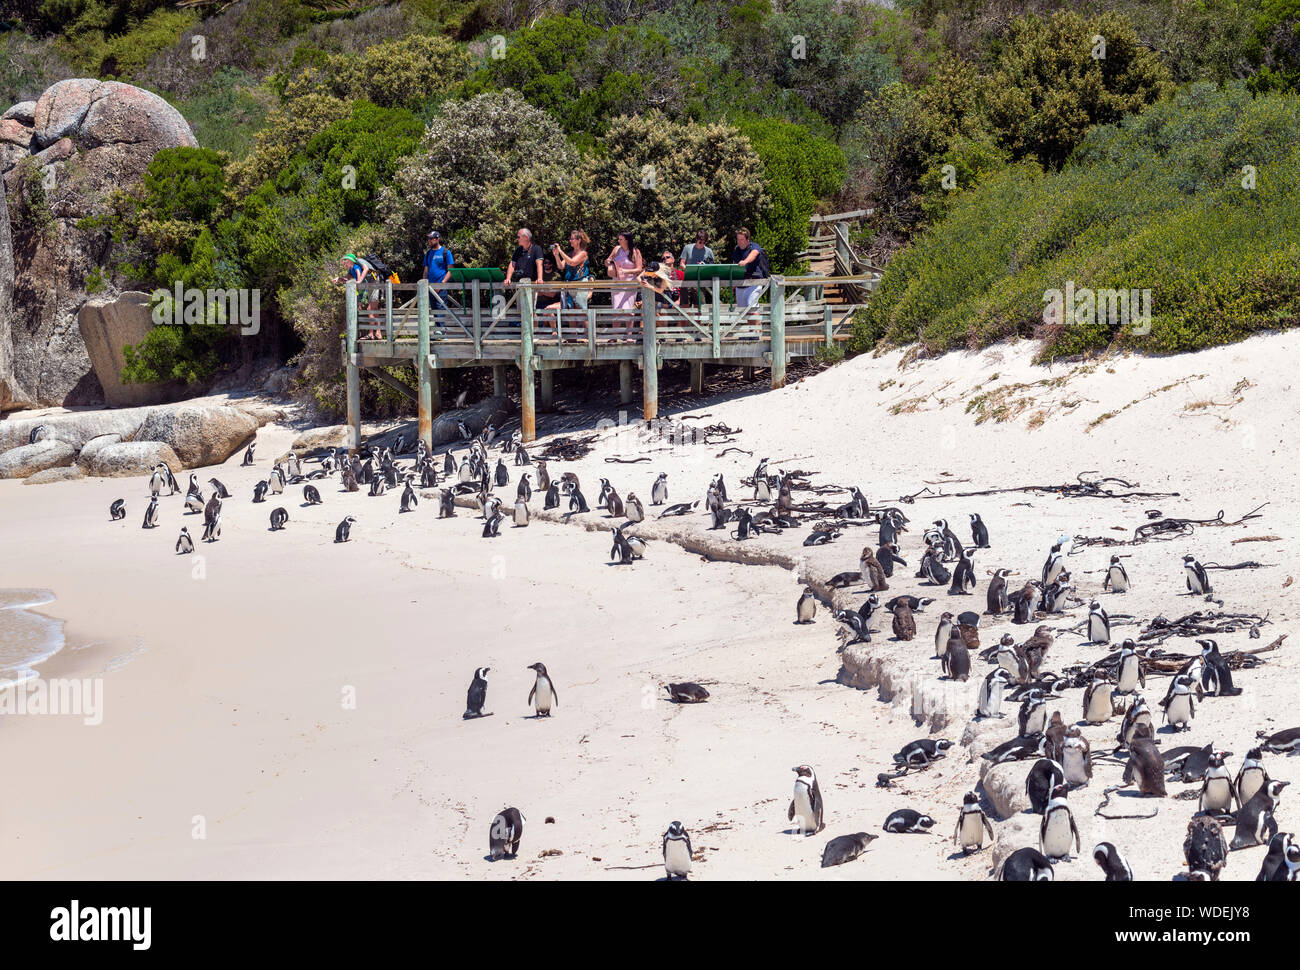 Les touristes l'affichage d'une colonie de pingouins africains (Spheniscus demersus) à la plage de Boulders, Simon's Town, Cape Town, Western Cape, Afrique du Sud Banque D'Images